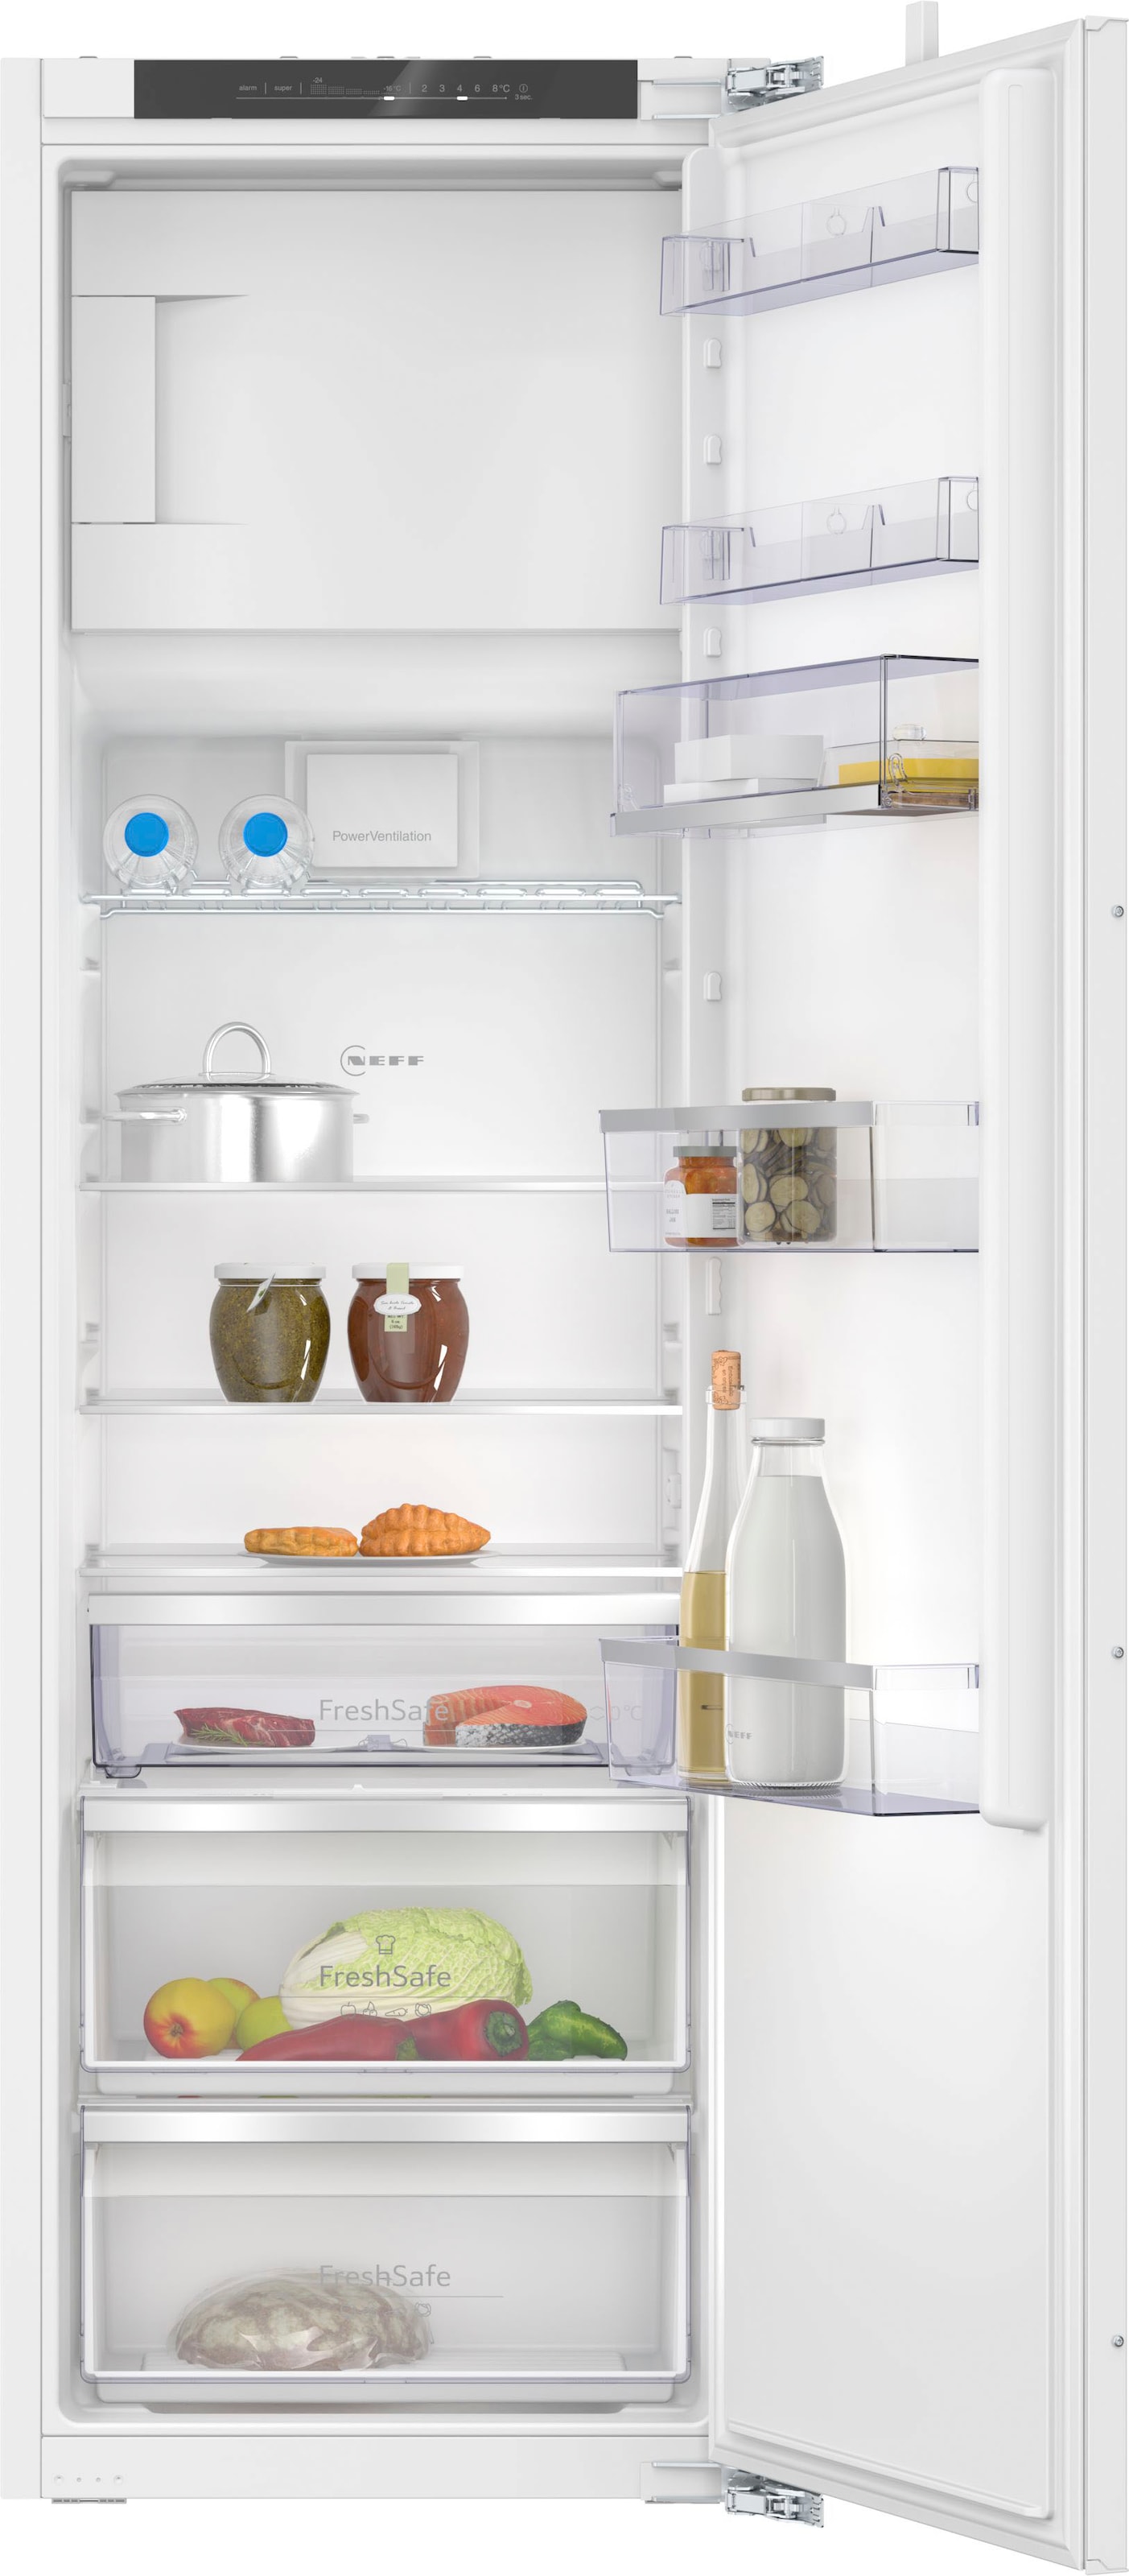 NEFF Einbaukühlschrank »KI2823DD0«, KI2823DD0, 177,2 cm hoch, 55,8 cm breit, Fresh Safe 1 : Schublade für ideale Lagerung von Fisch & Fleisch